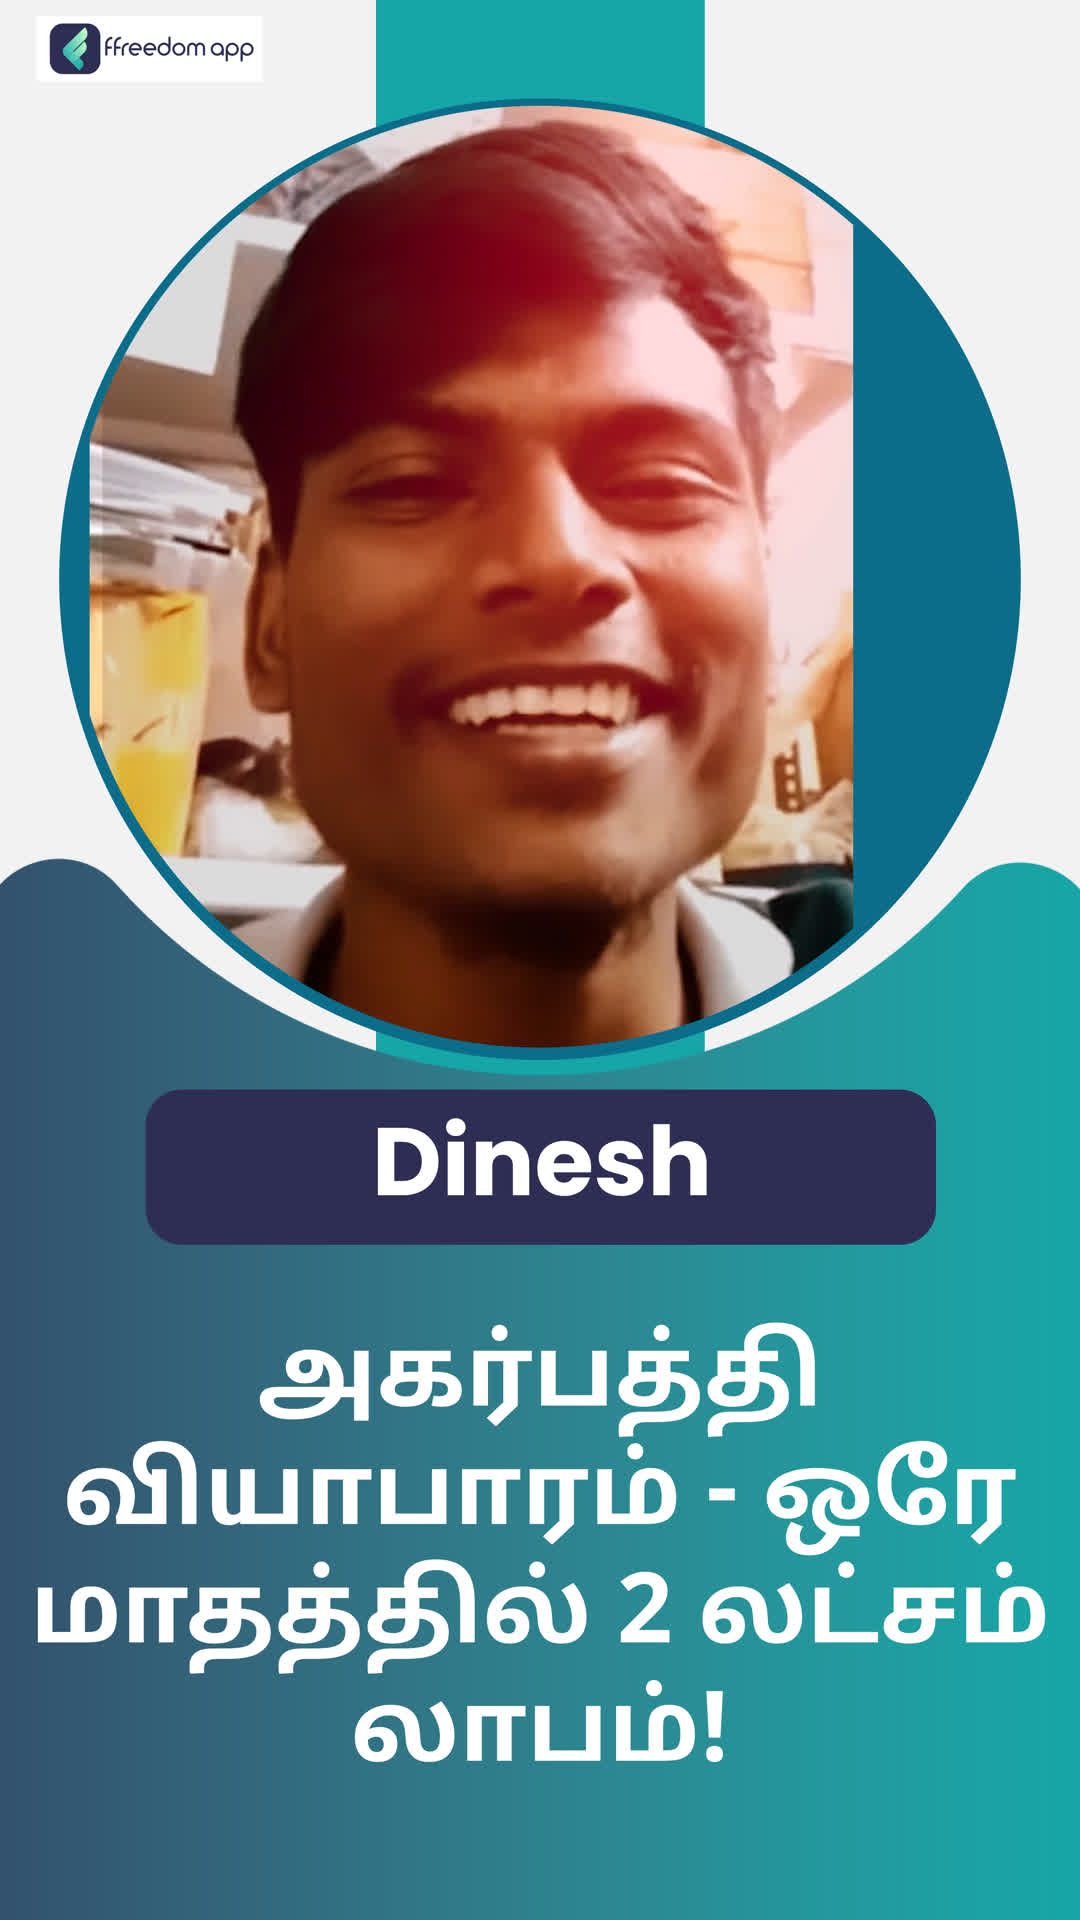 Dinesh I's Honest Review of ffreedom app - Bengaluru City ,Karnataka